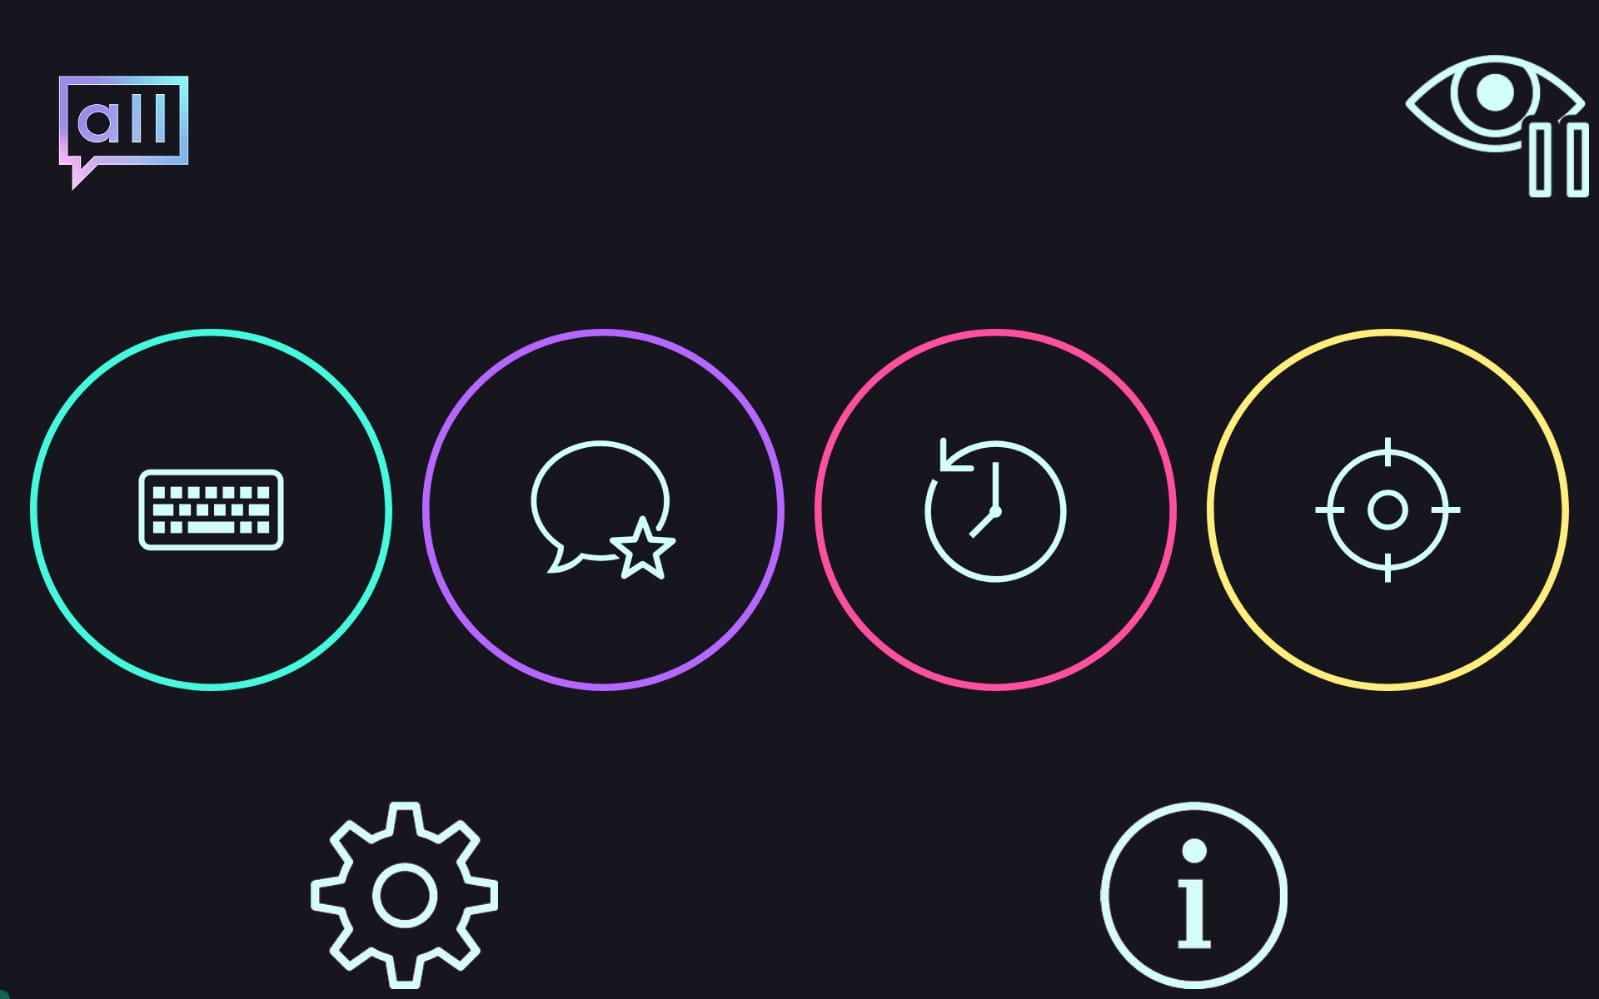 logo de la app arriba a la izquierda, arriba a la derecha icono de pausar uso de mirada, abajo los iconos de configuración e información y en el centro de la pantalla los iconos más grandes son de las cuatro funcionalidades